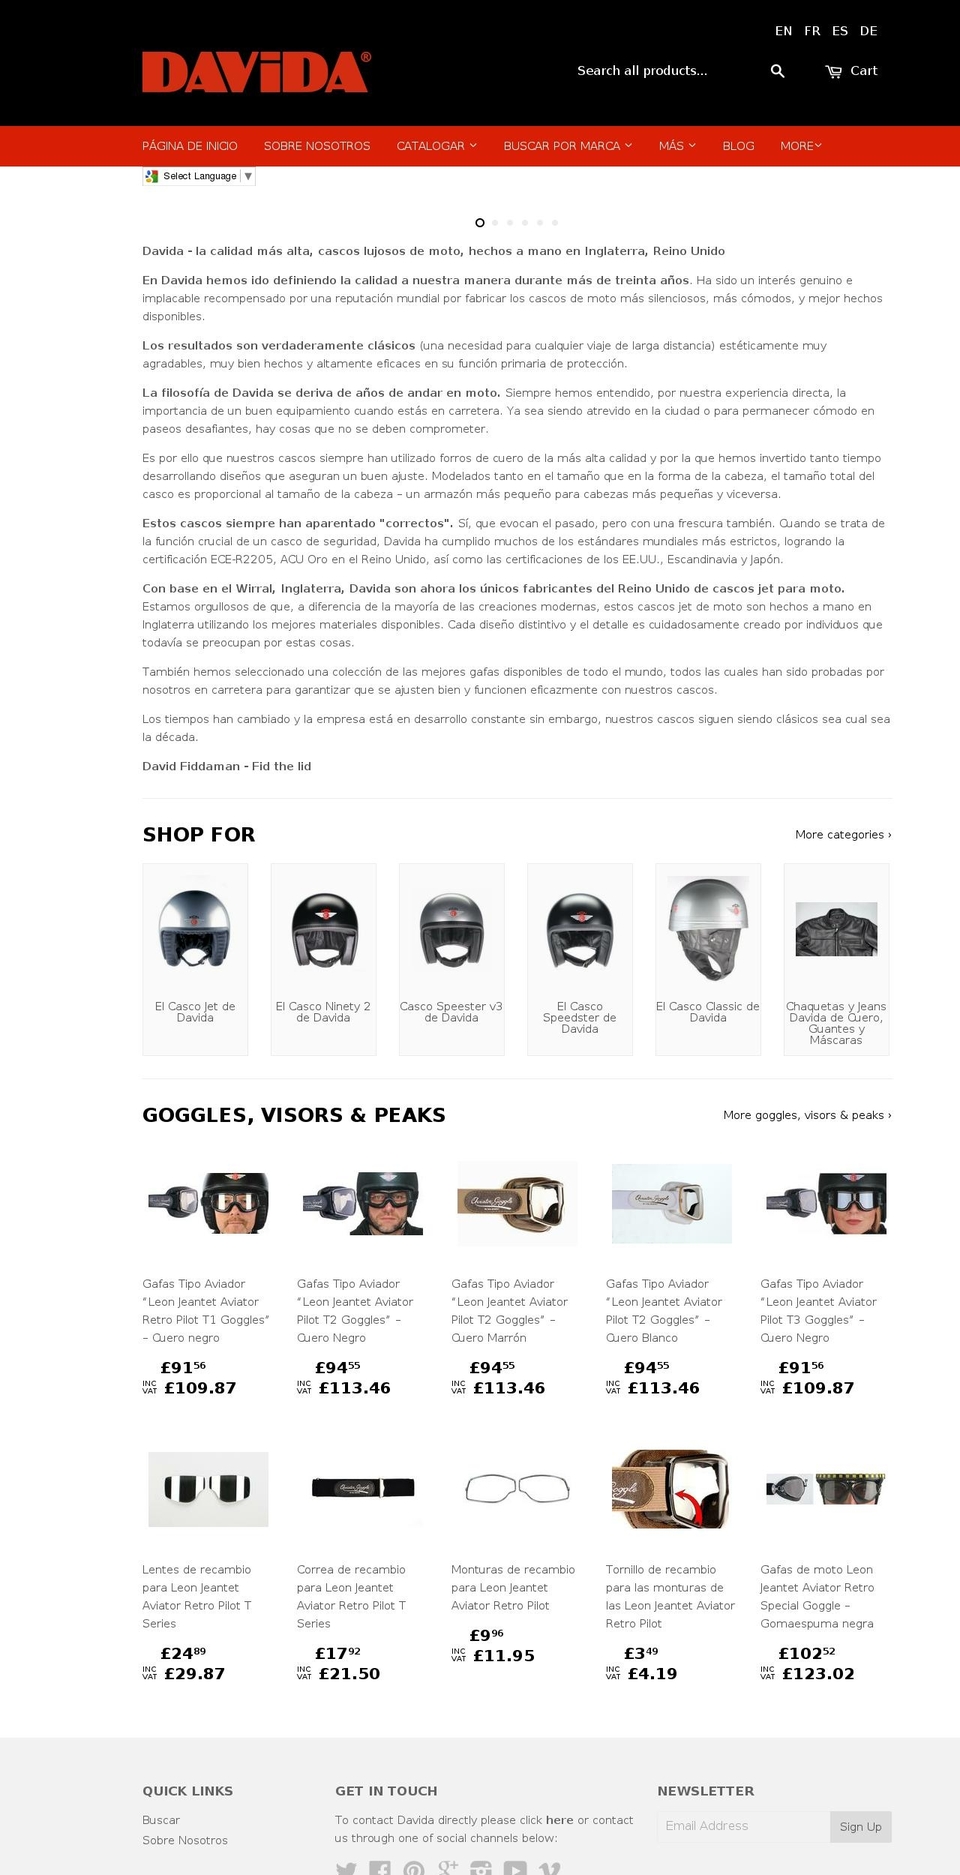 Wokiee Shopify theme site example davida.com.es